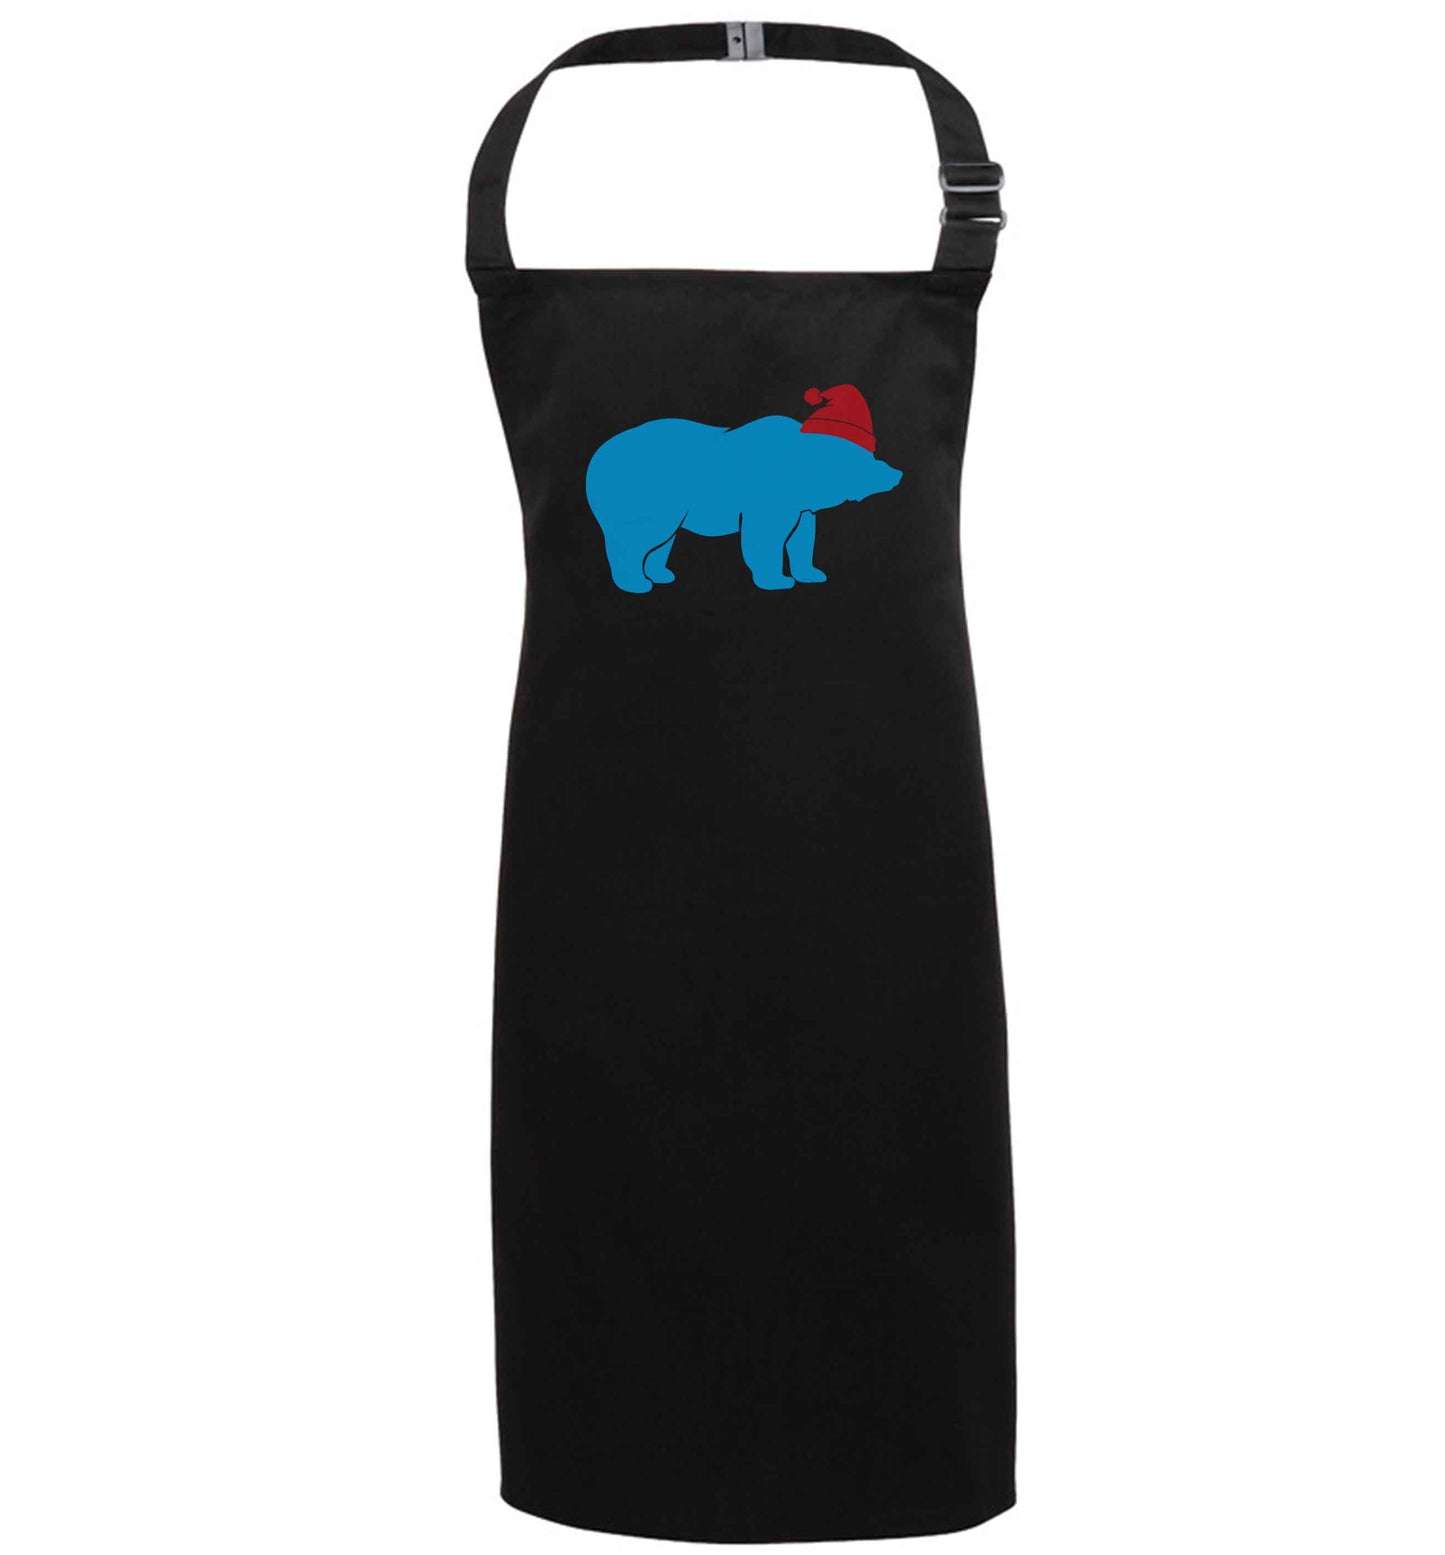 Blue bear Santa black apron 7-10 years